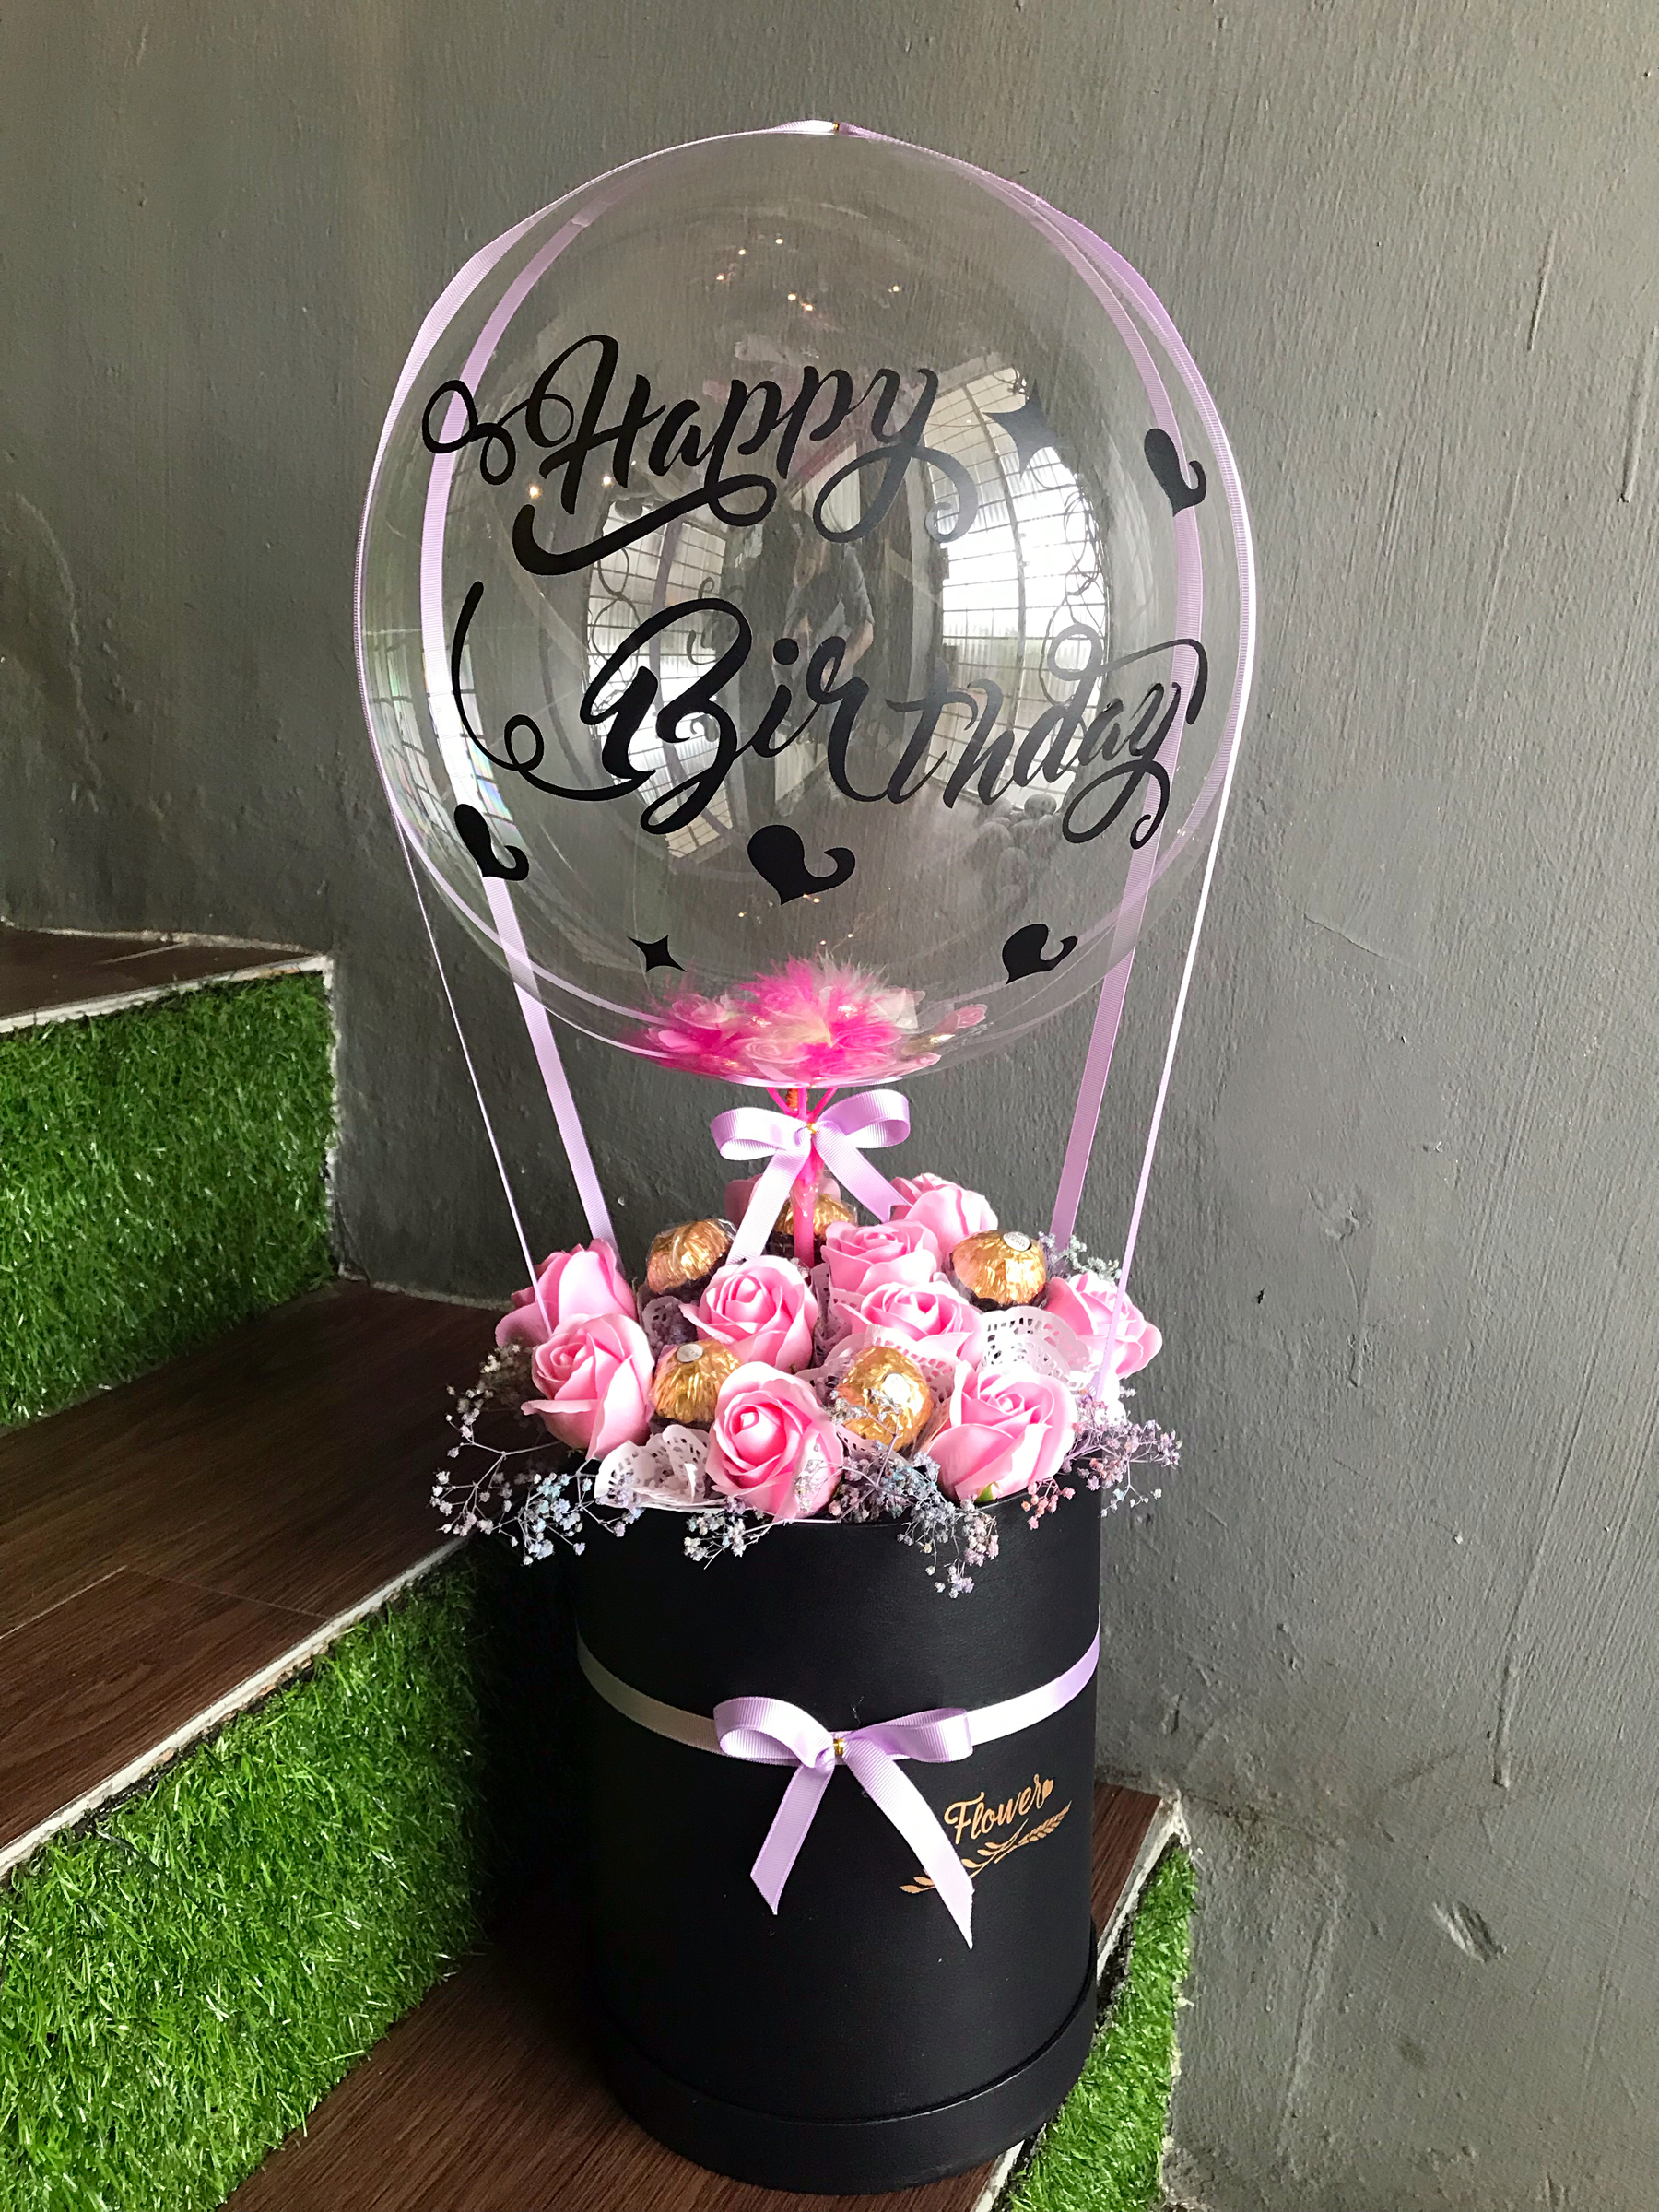 X 013 Hot Air Balloon Flower Box De Fairy Tales